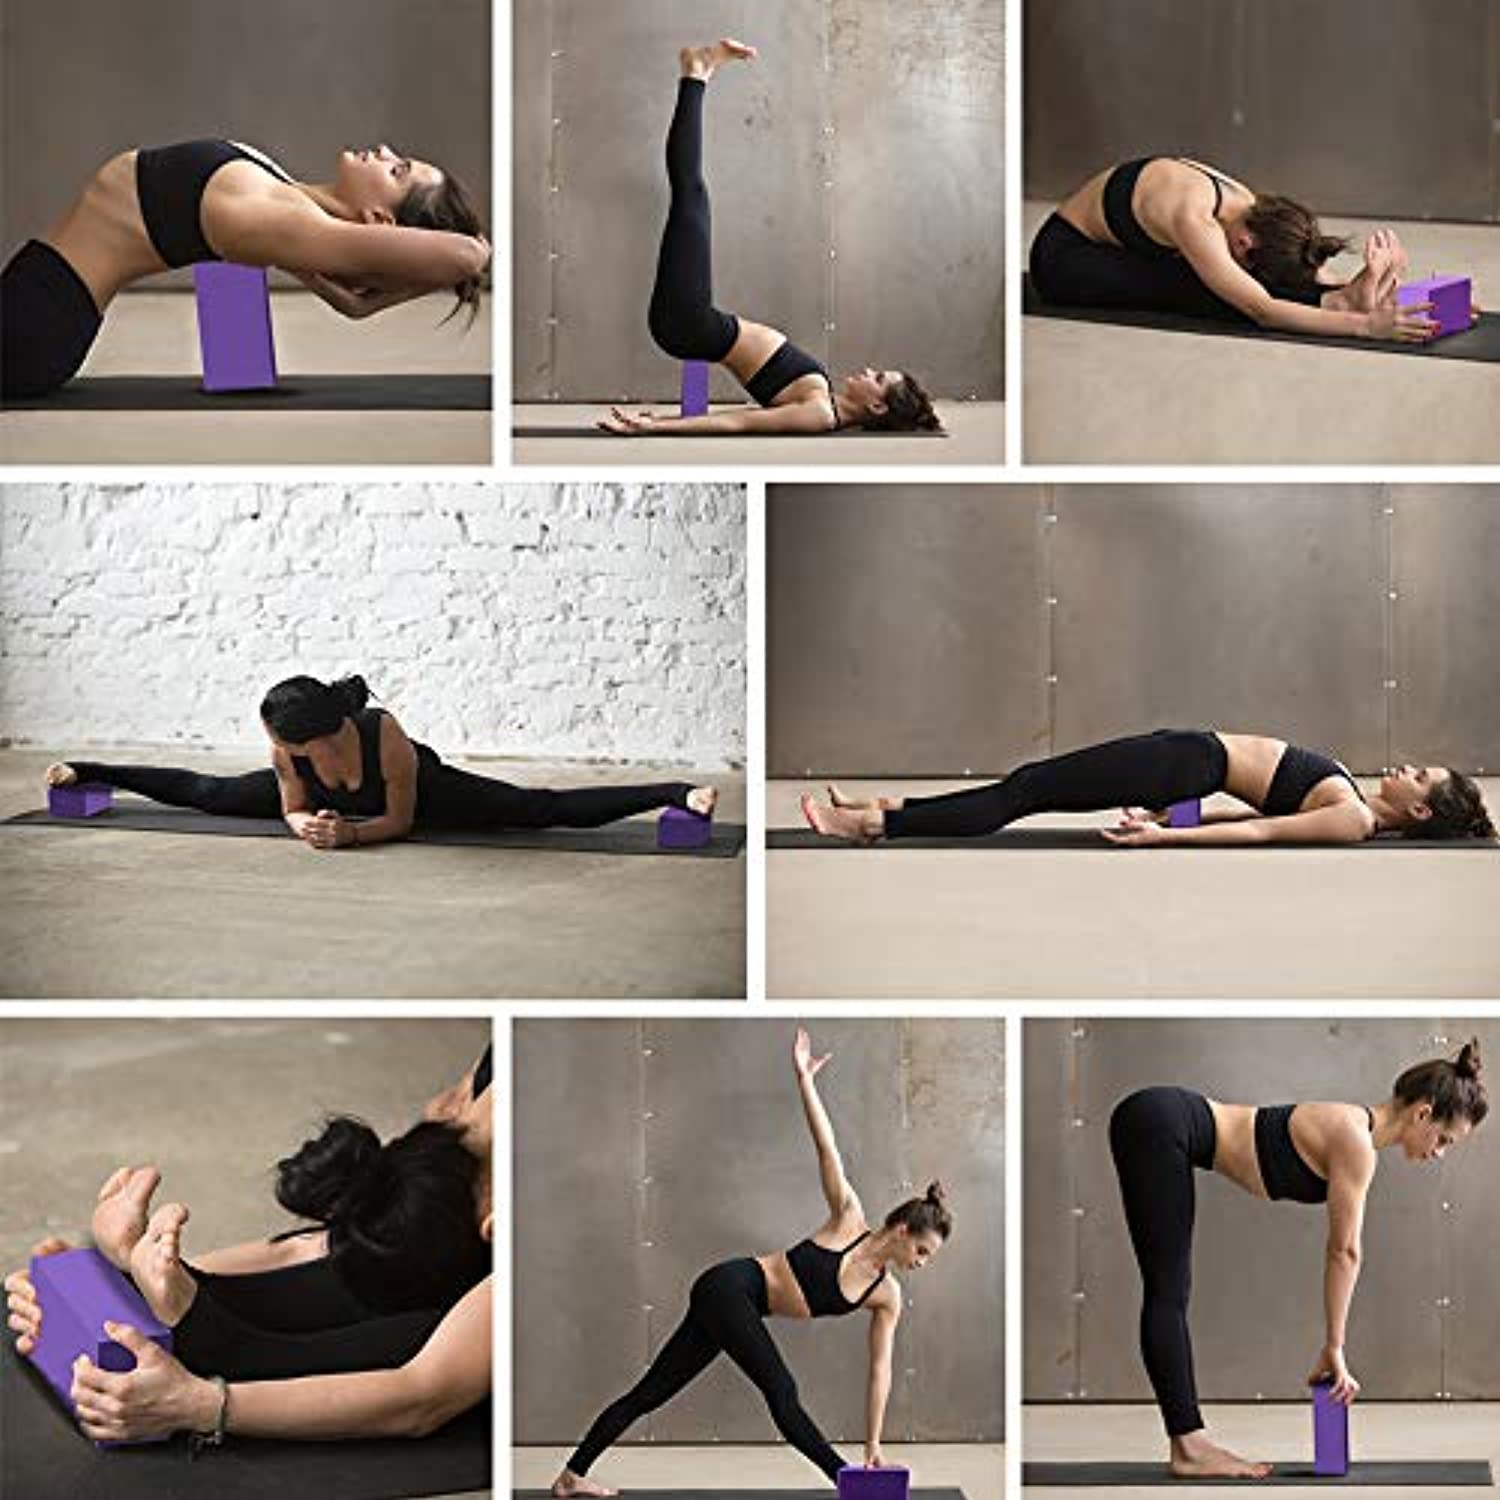 Ladrillo de Yoga y Pilates